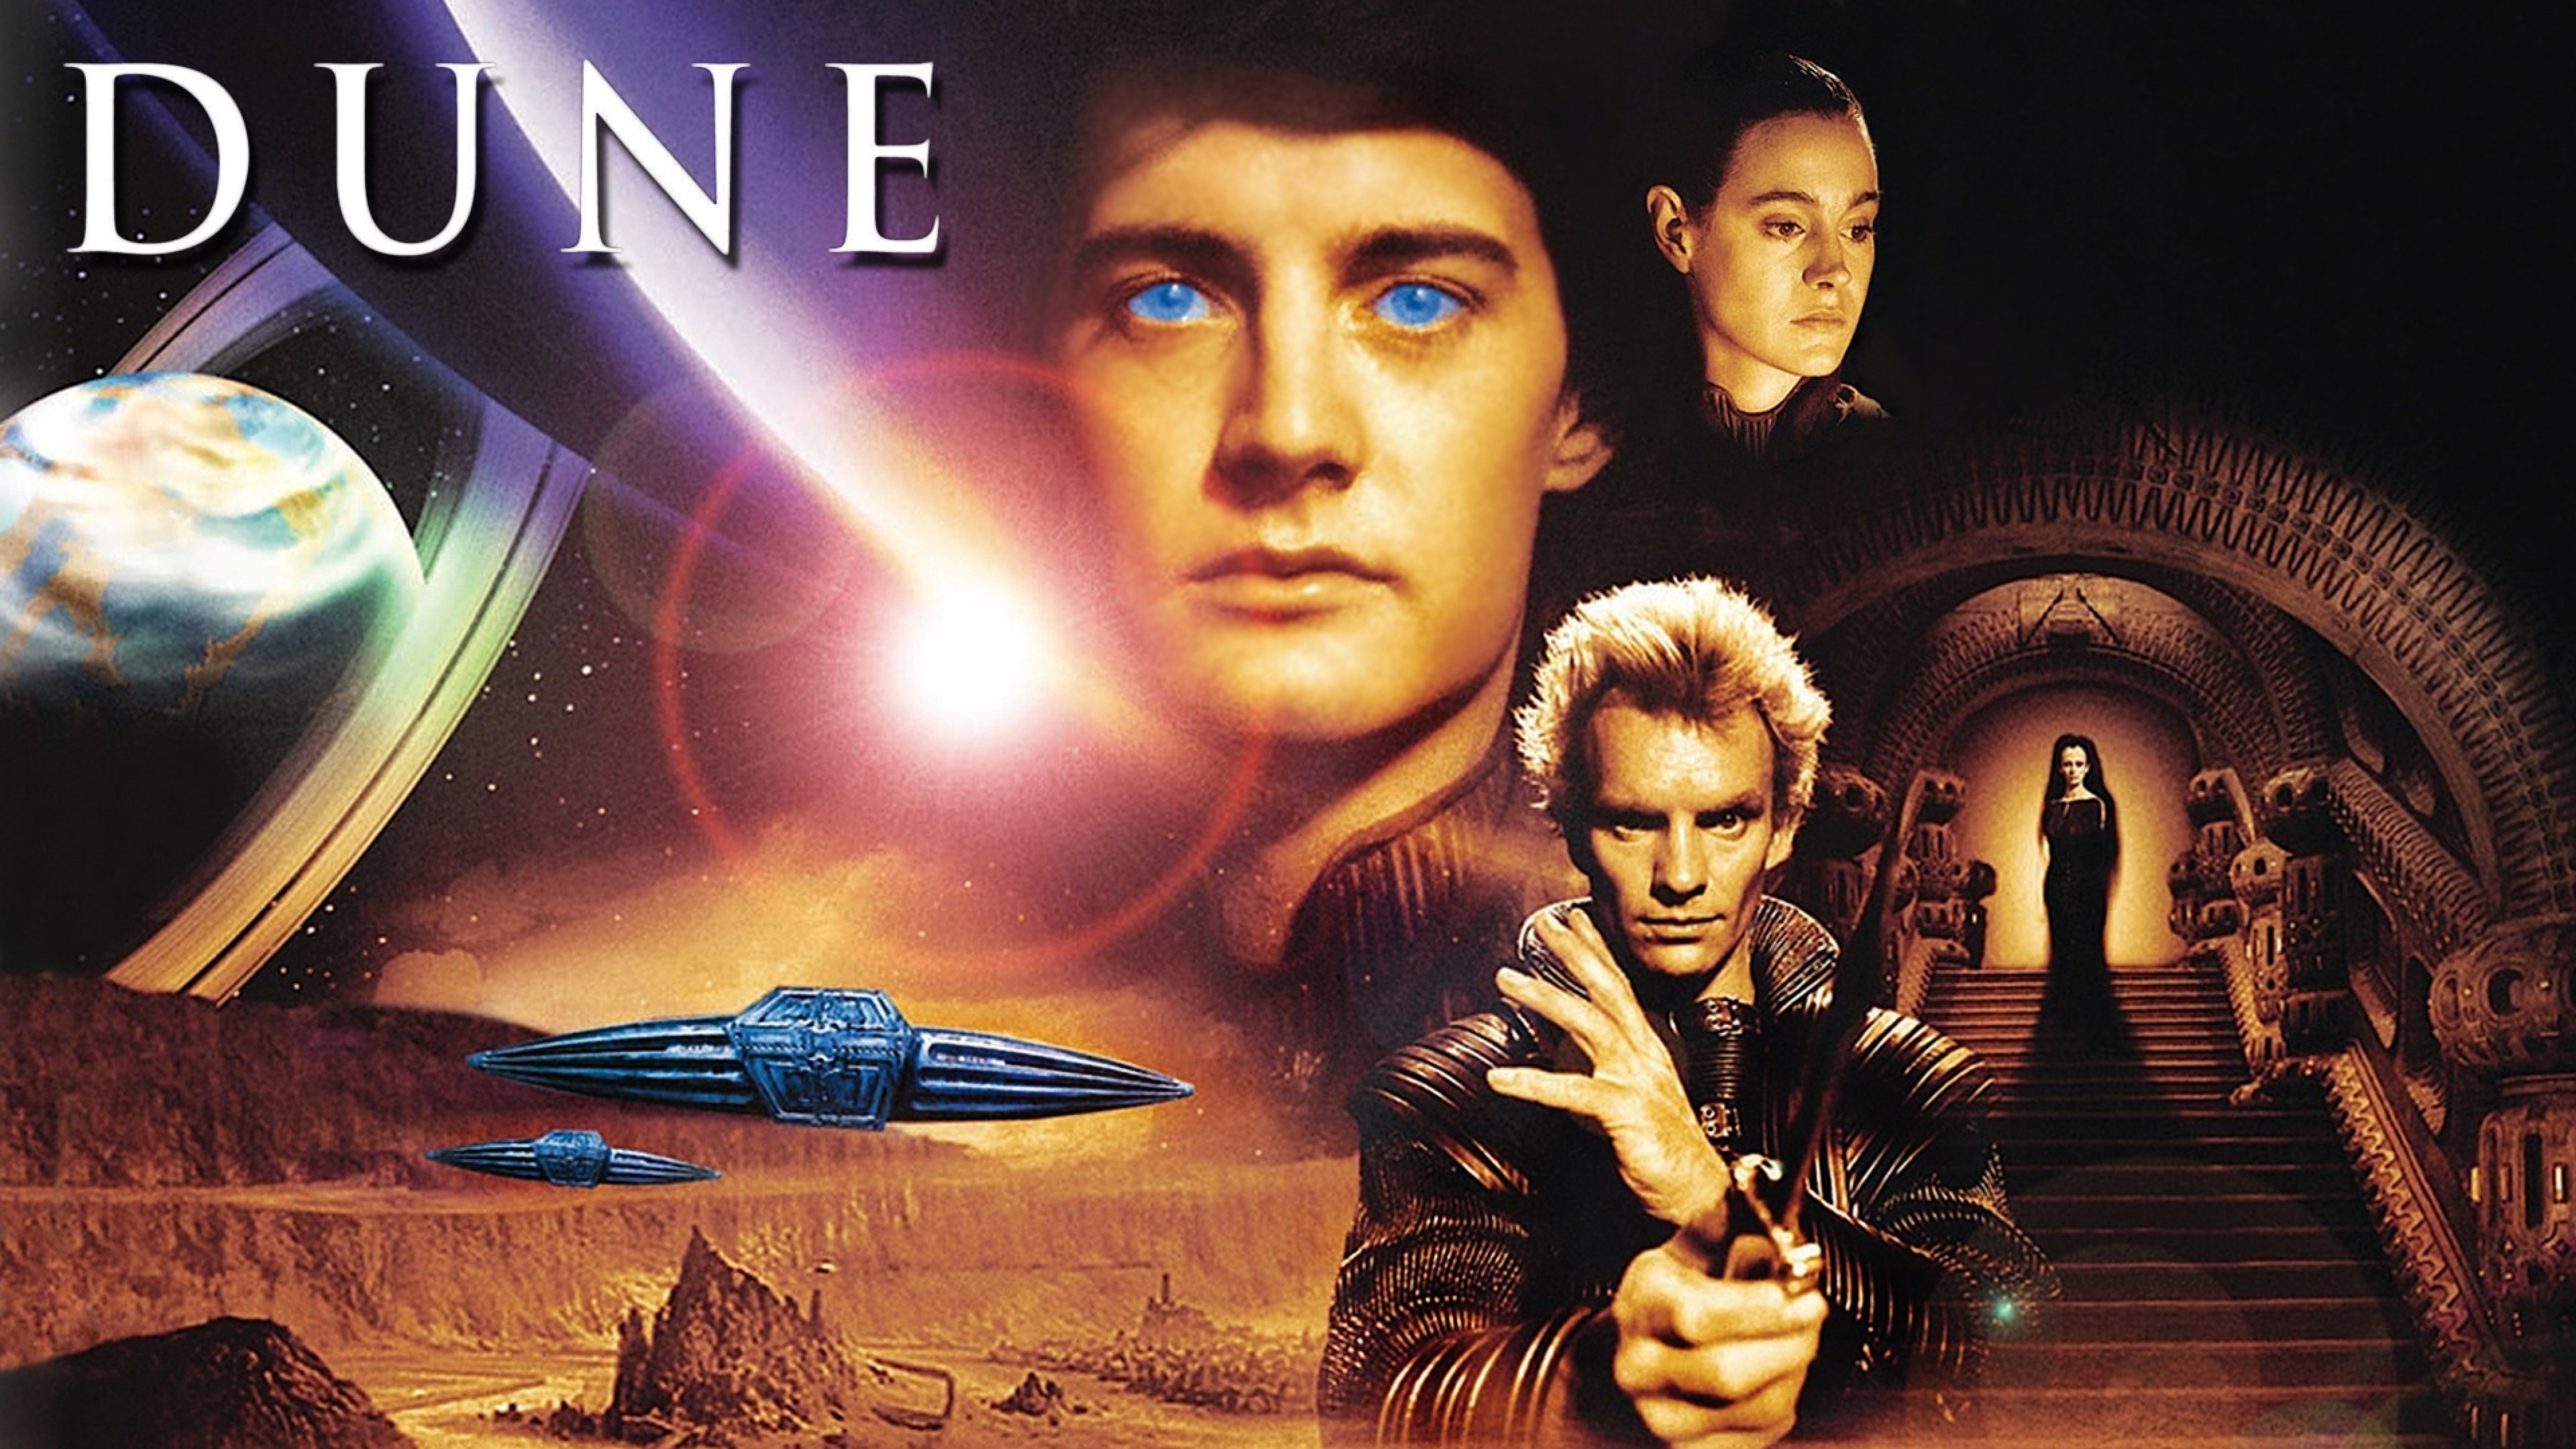 Image du film Dune de David Lynch sorti en 1984 la première adaptation sur grand écran des romans de Frank Herbert